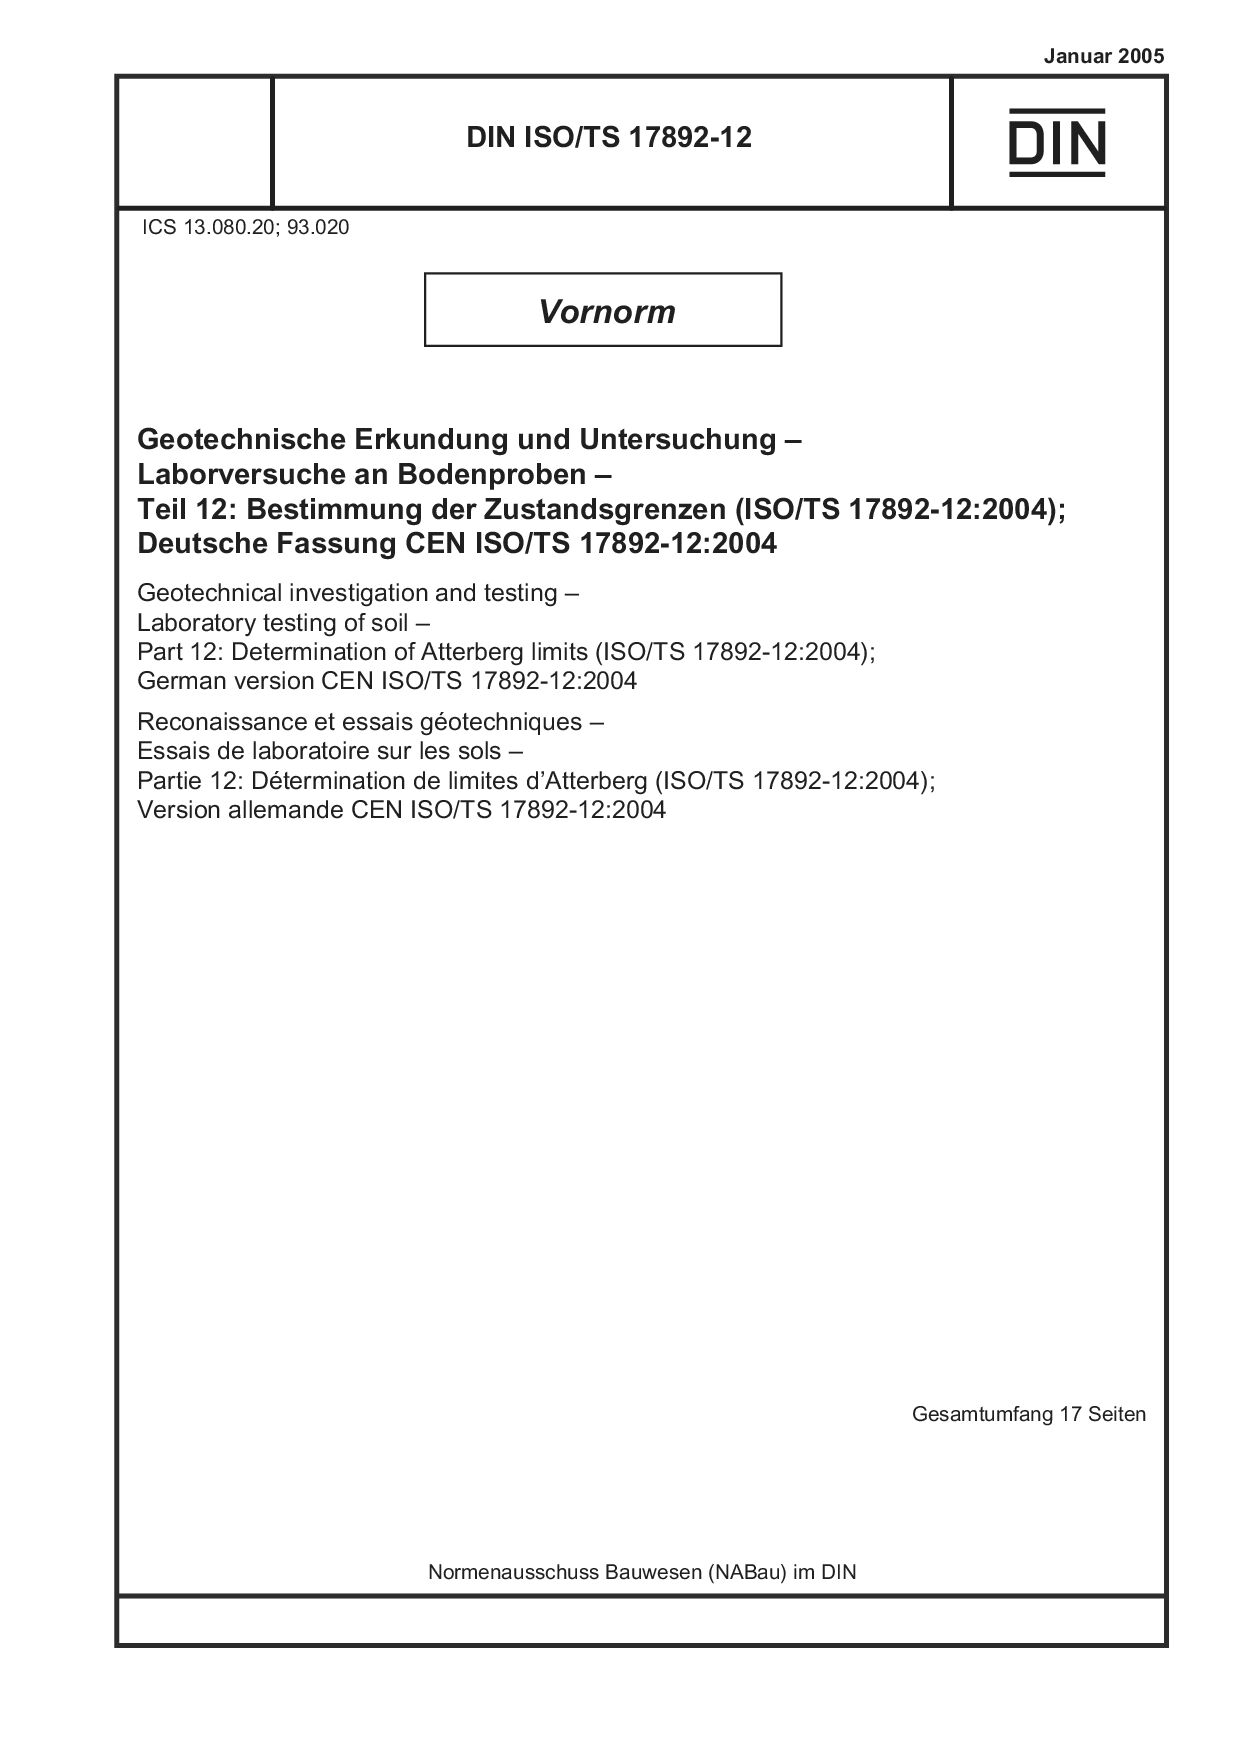 DIN ISO/TS 17892-12:2005封面图